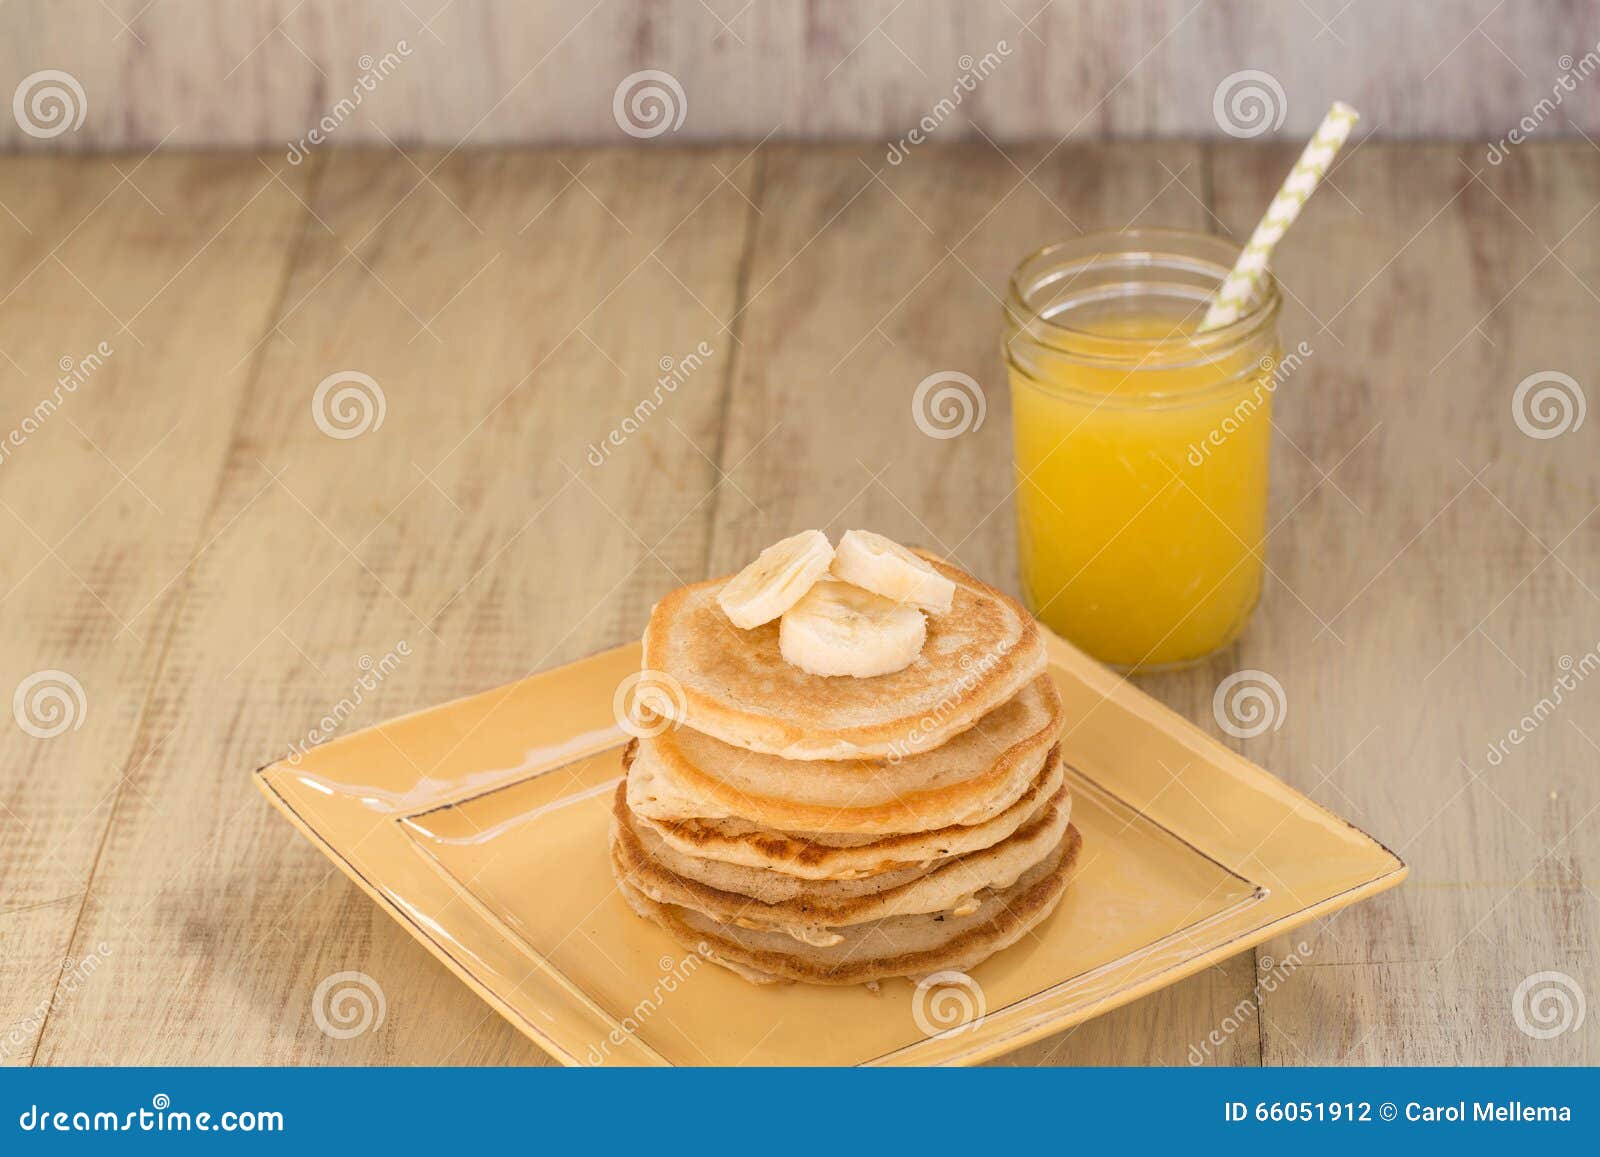 Stapel Pannekoeken met Bananen en Vers Jus d'orange. Een stapel smakelijke ontbijtpannekoeken met bananen en een glas vers gedrukt jus d'orange